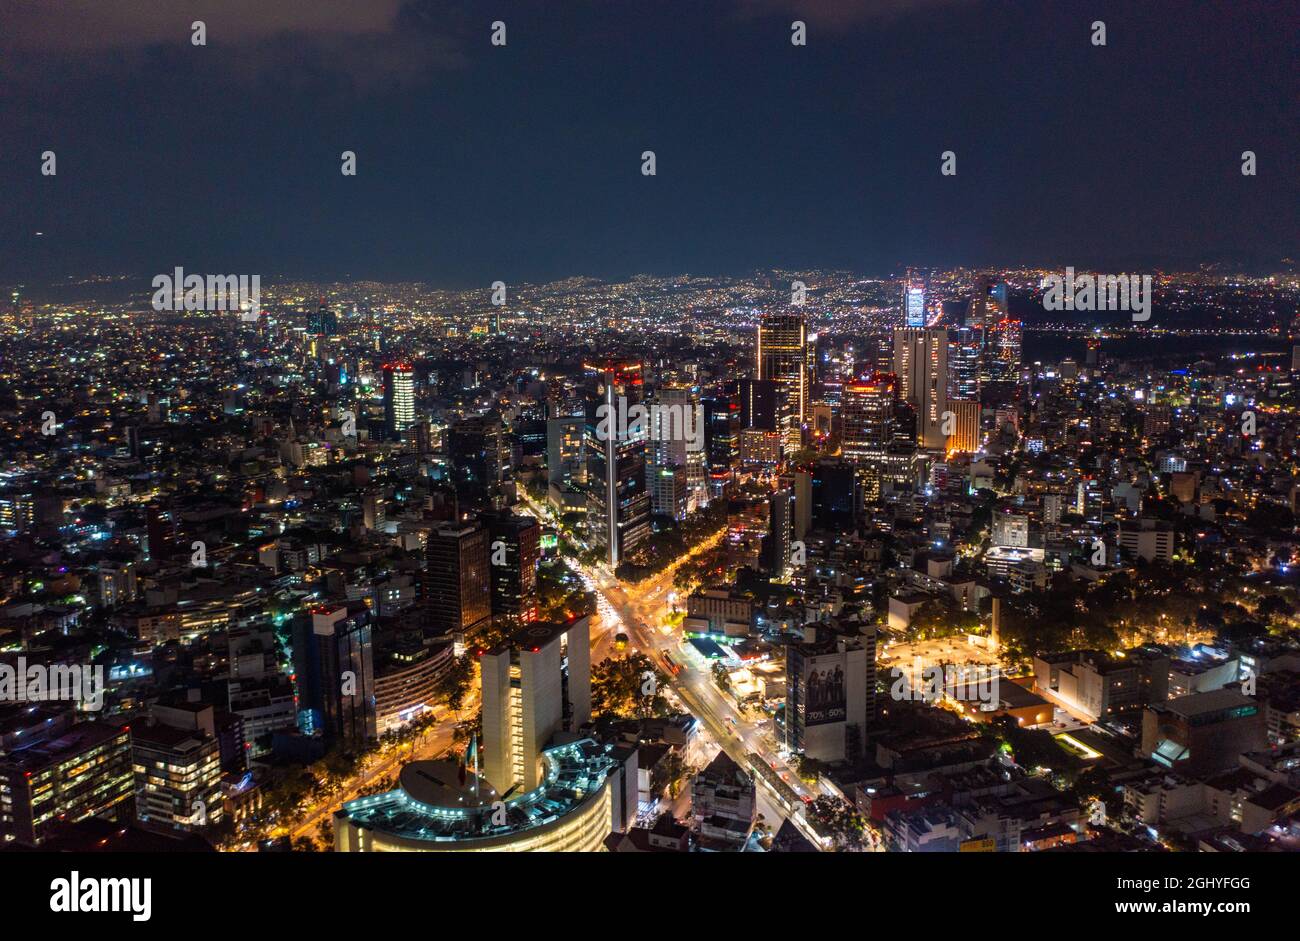 Luftaufnahme von schönen Gebäuden mit beleuchteten Beleuchtungen, die in Mexiko-Stadt gegen den dunklen schwarzen Himmel in der Nacht leuchten Stockfoto